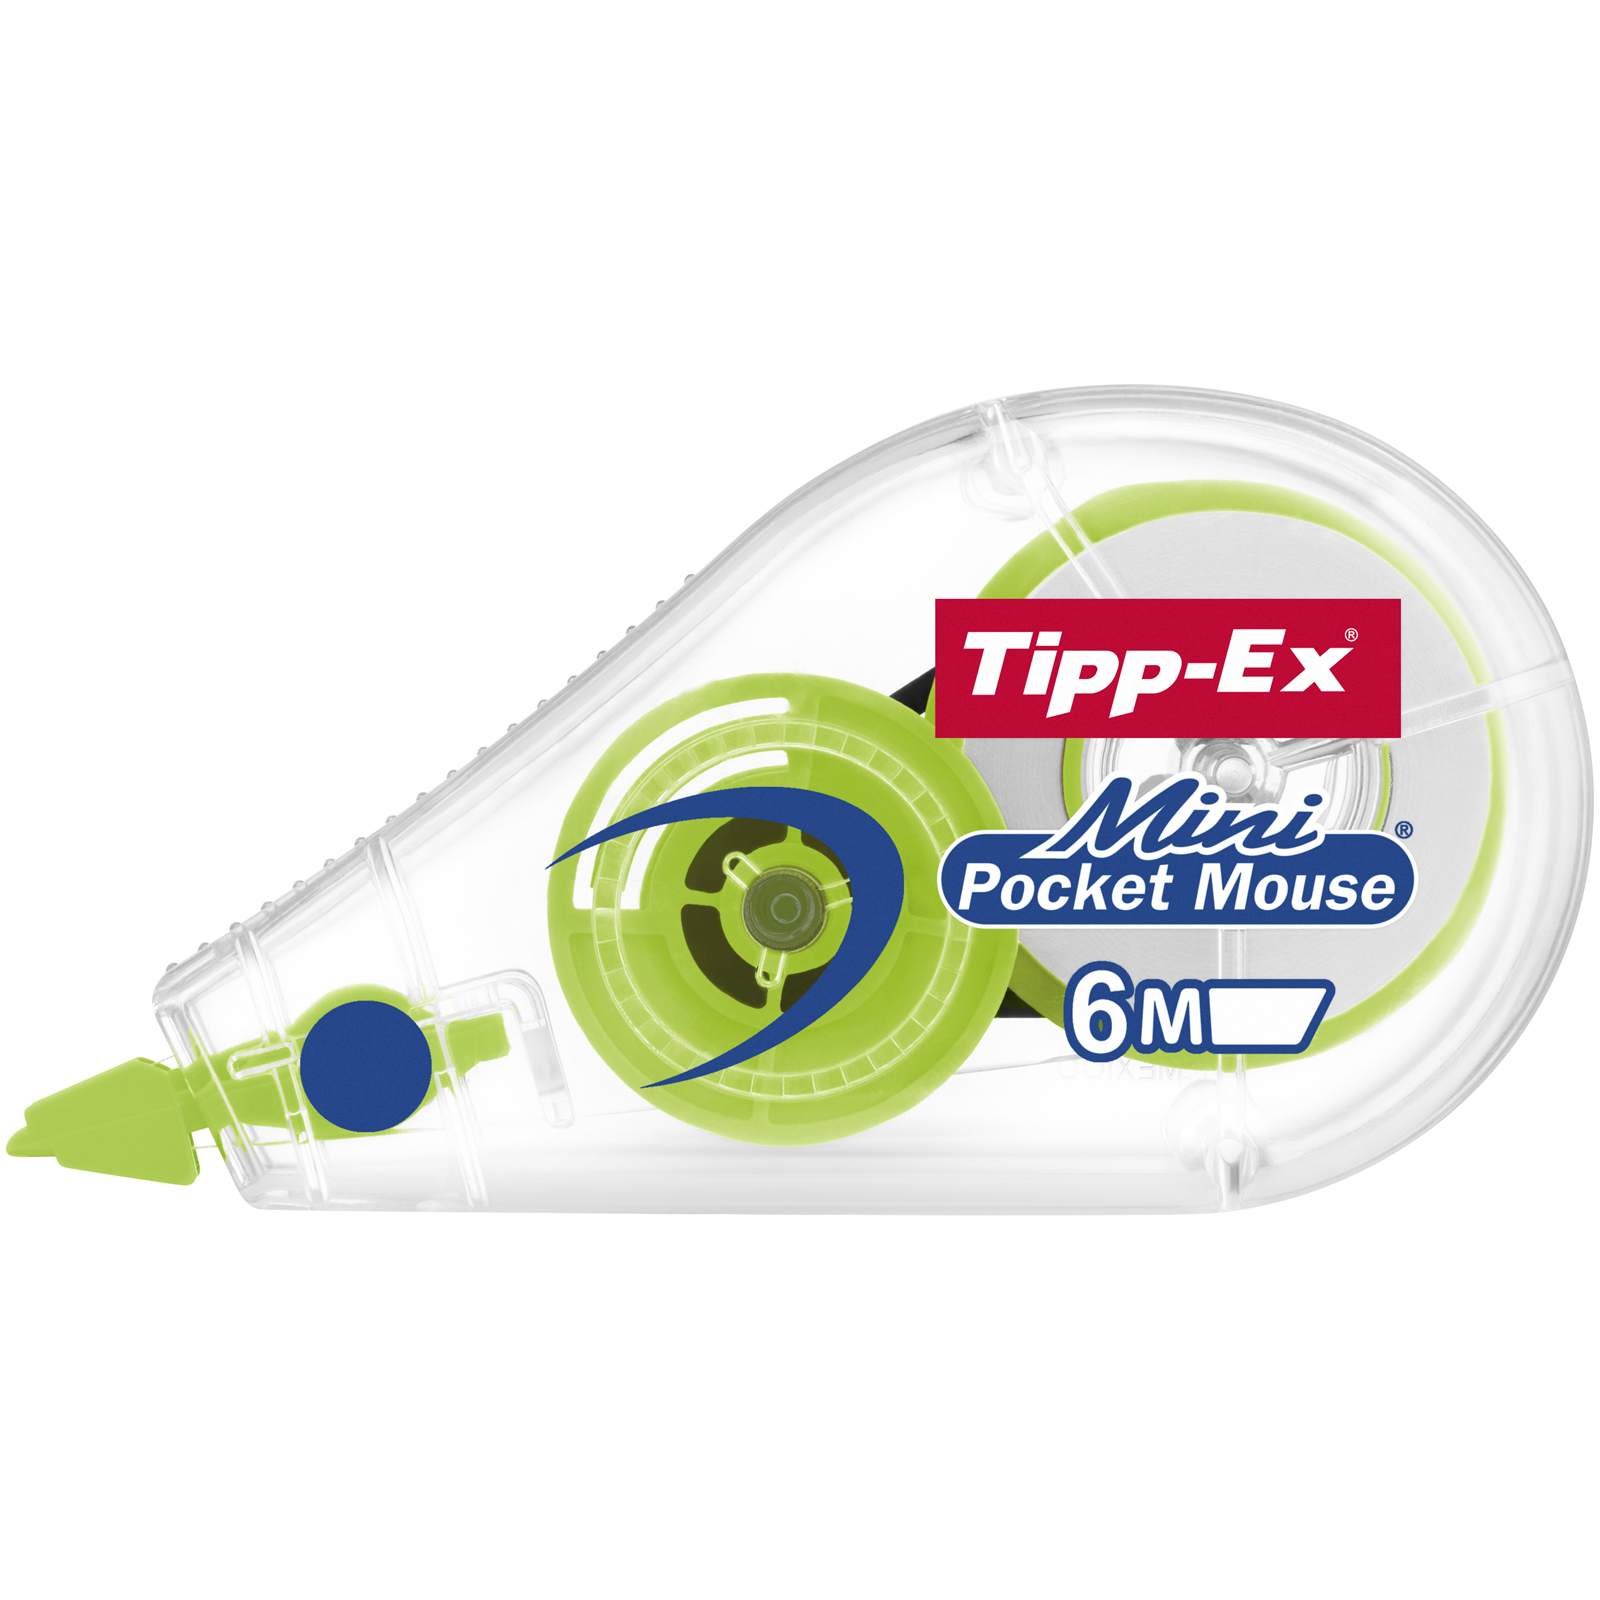 Acheter Tipp-ex Mini pocket mouse jaune - Gommes,  - Bic - Le